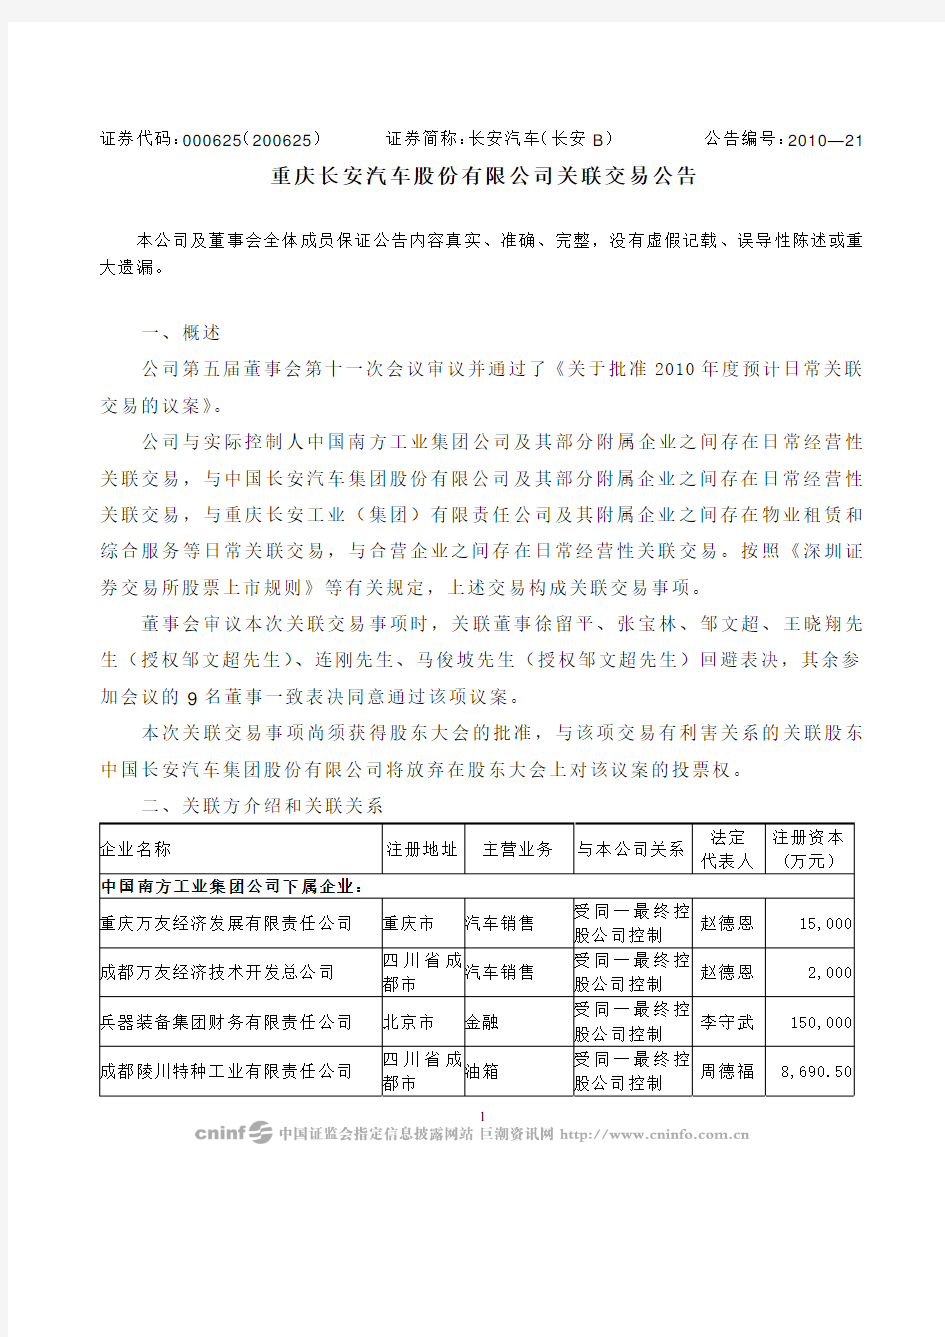 重庆长安汽车股份有限公司关联交易公告